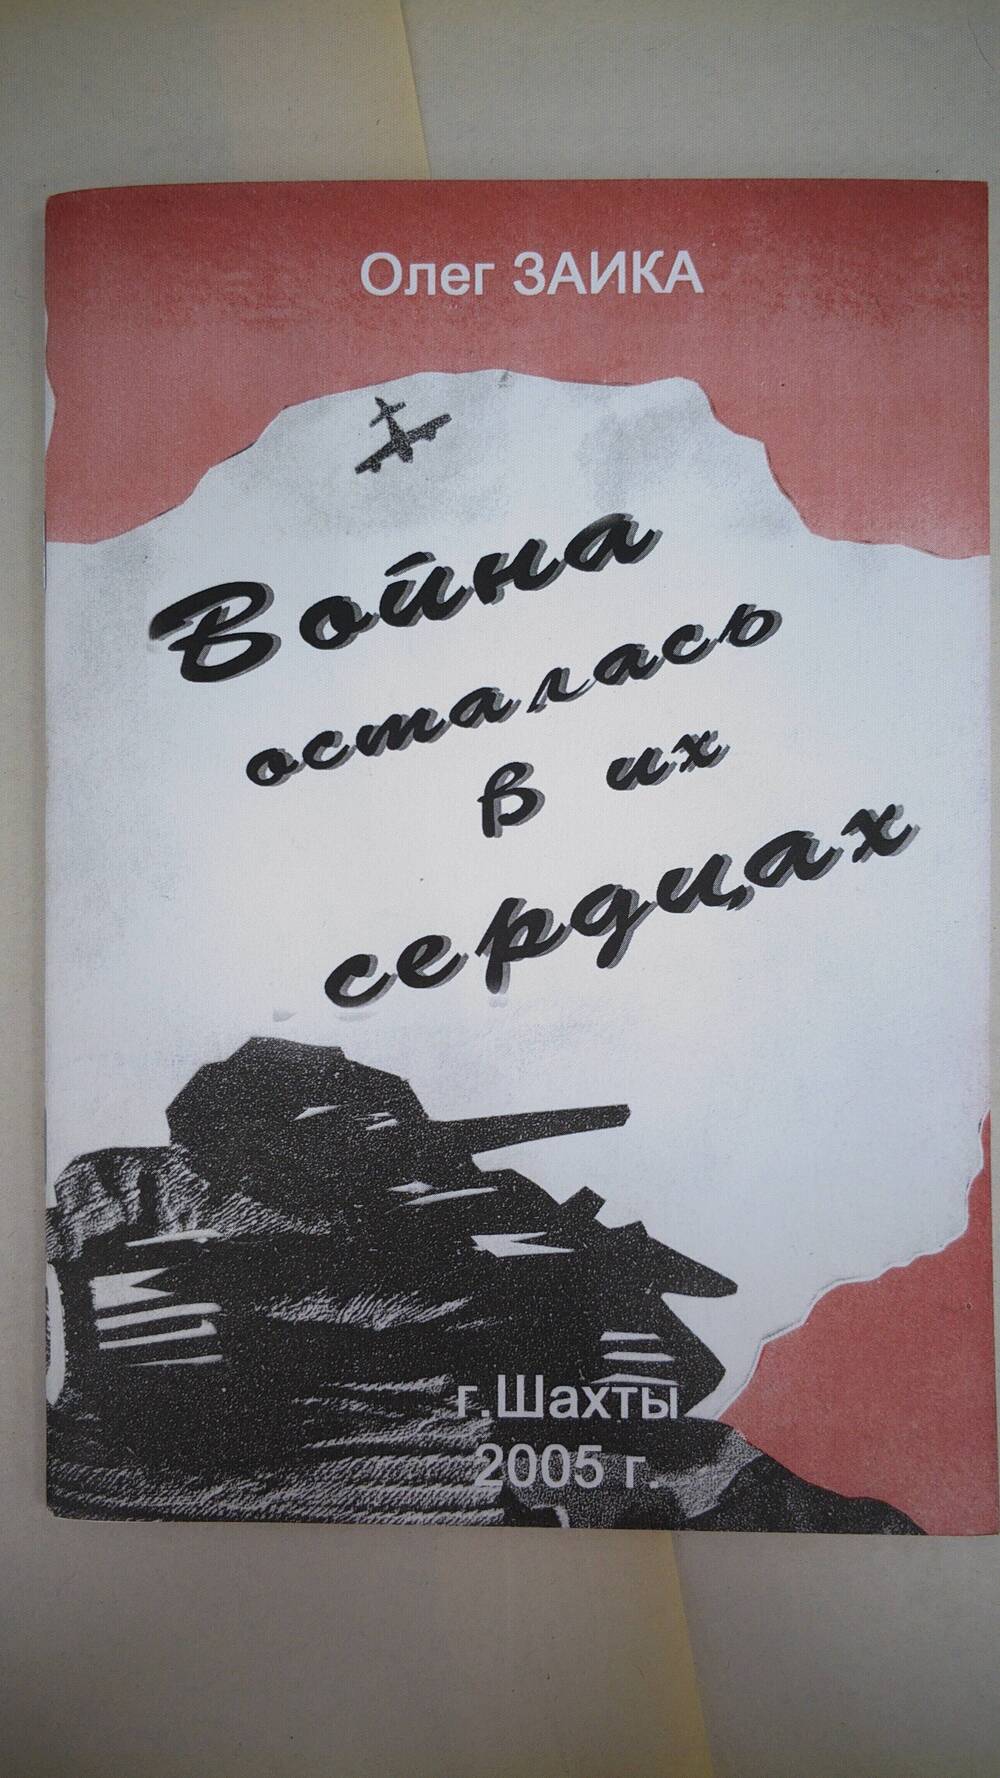 Олег Заика книга Война осталась в их сердцах, г. Шахты. 2005 г., 30 с.